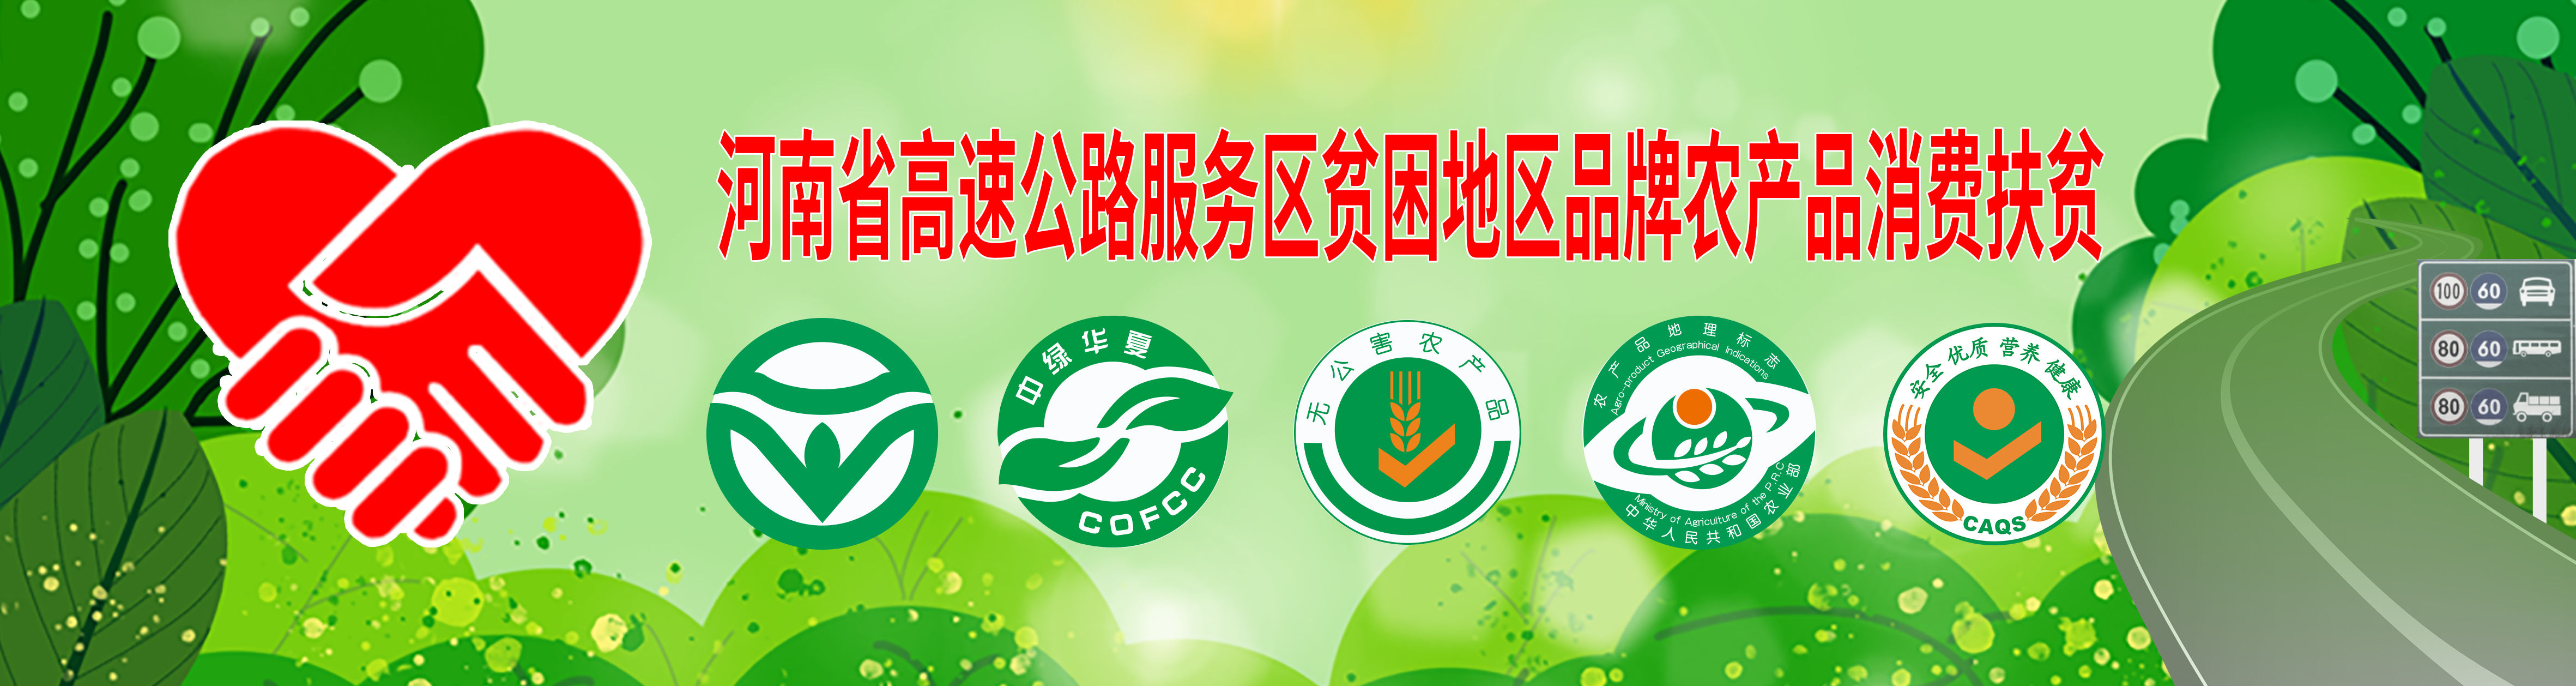 河南省高速公路服务区贫困地区品牌农产品消费扶贫统一标识